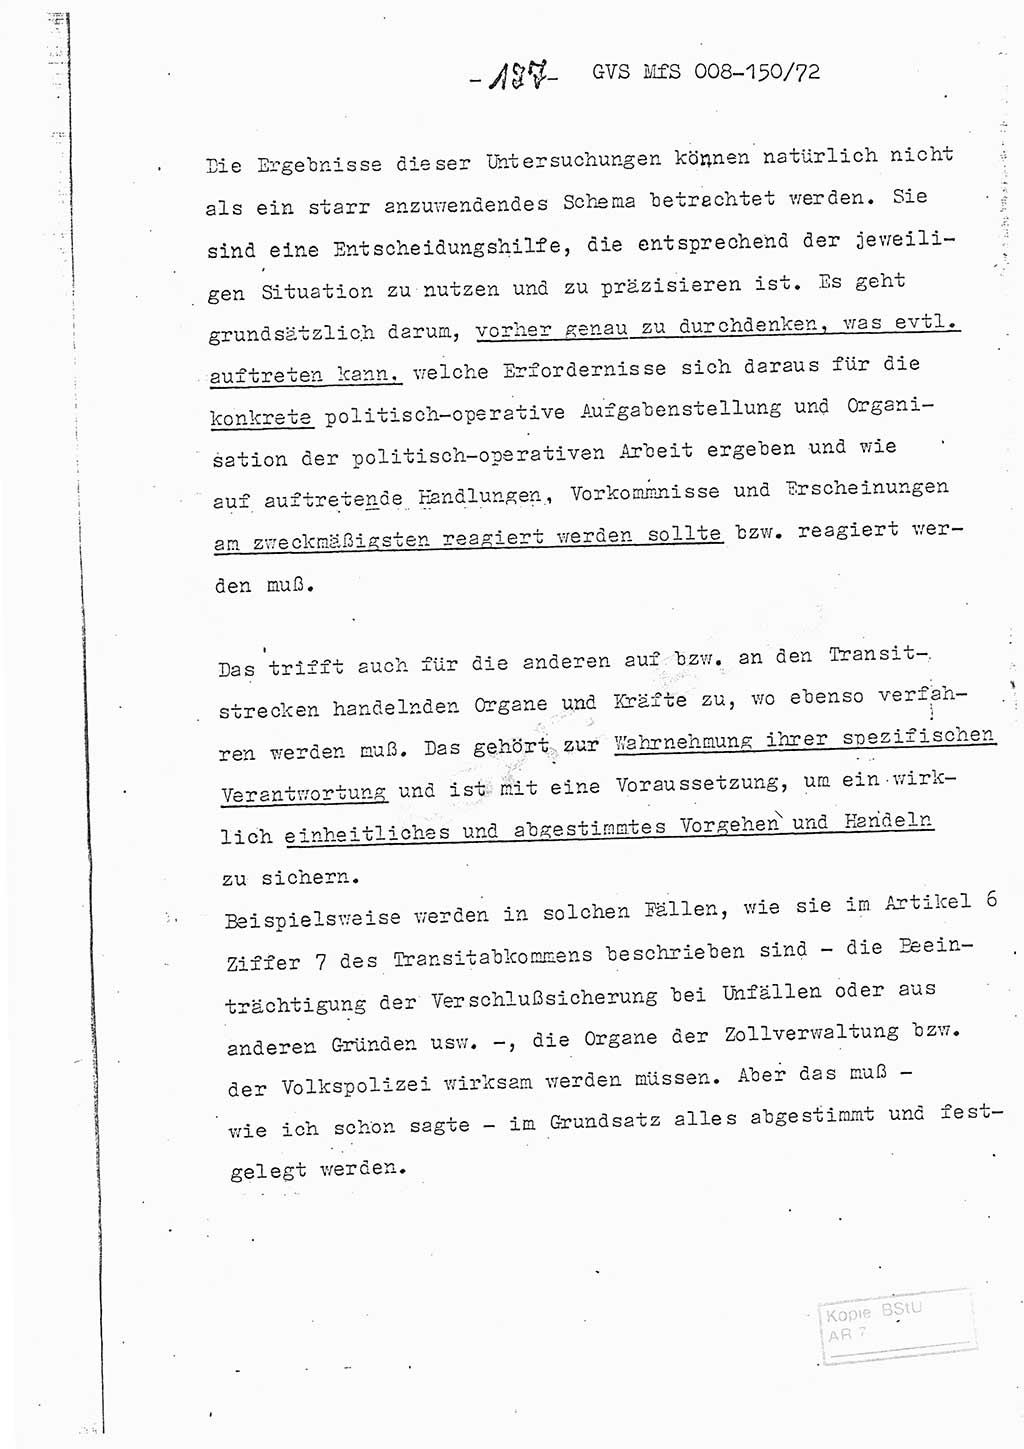 Referat (Entwurf) des Genossen Minister (Generaloberst Erich Mielke) auf der Dienstkonferenz 1972, Ministerium für Staatssicherheit (MfS) [Deutsche Demokratische Republik (DDR)], Der Minister, Geheime Verschlußsache (GVS) 008-150/72, Berlin 25.2.1972, Seite 127 (Ref. Entw. DK MfS DDR Min. GVS 008-150/72 1972, S. 127)